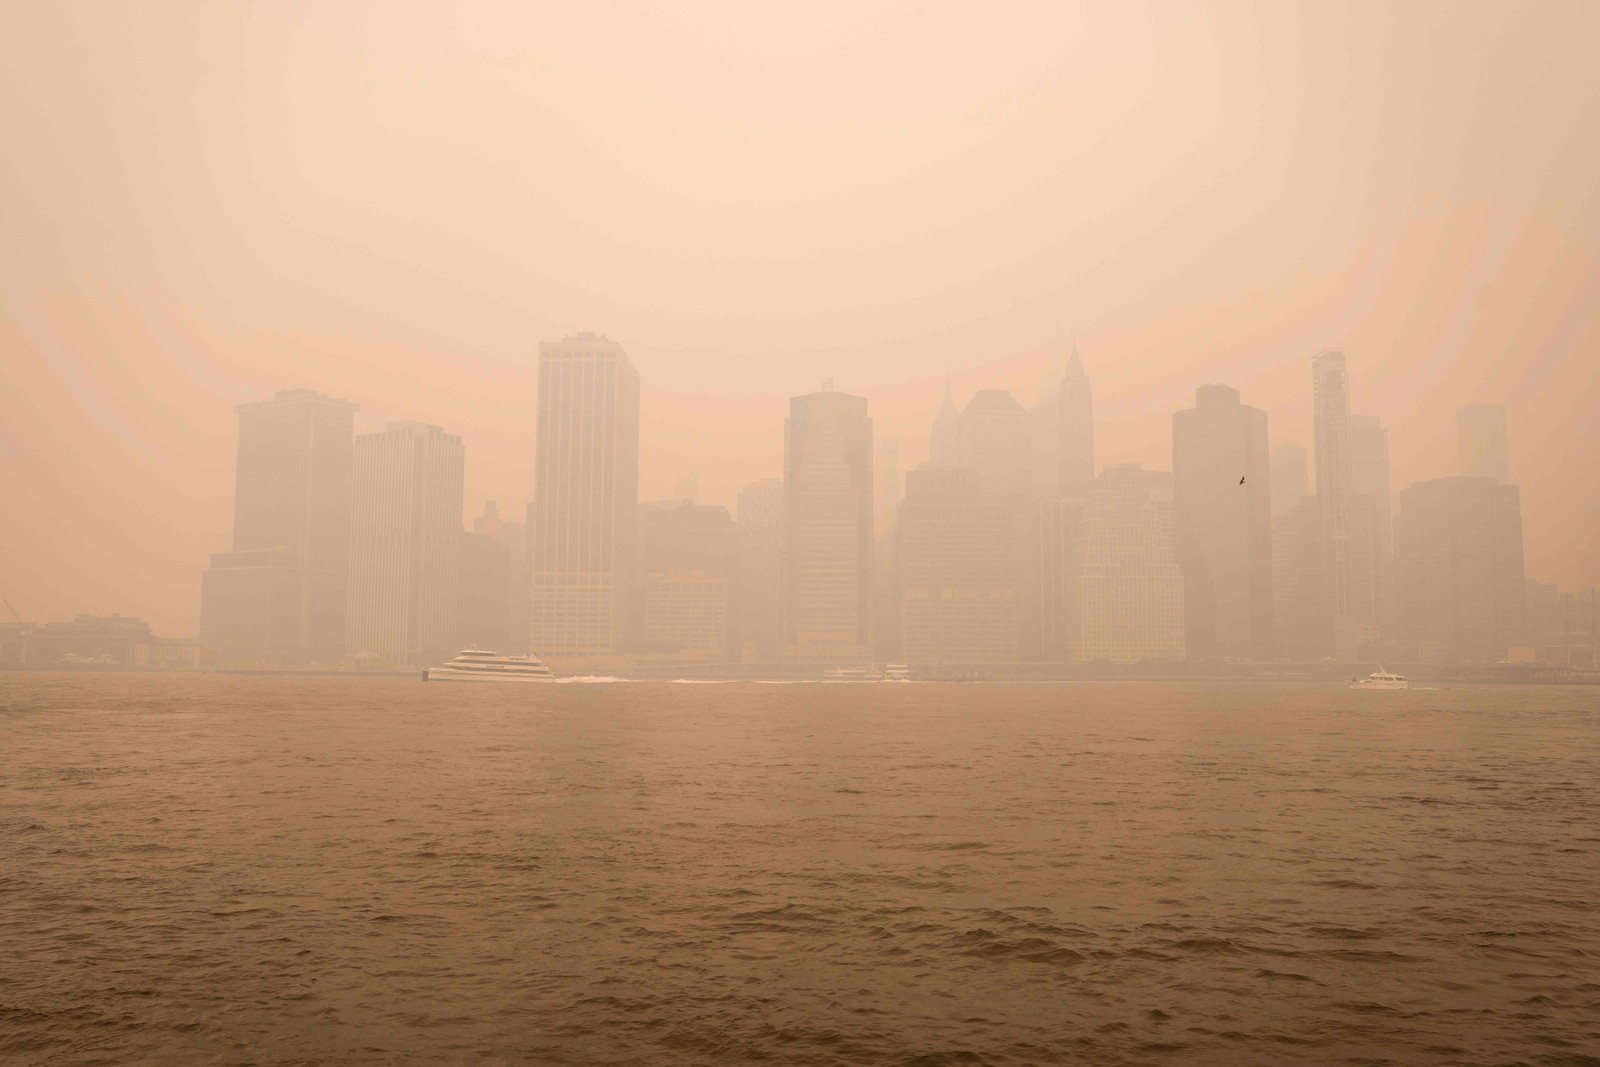 O horizonte de Lower Manhattan com céu nebuloso causado pela fumaça de grandes incêndios florestais no Canadá  - Foto de Scott Heins/GETTY IMAGES NORTH AMERICA/Getty Images via AFP